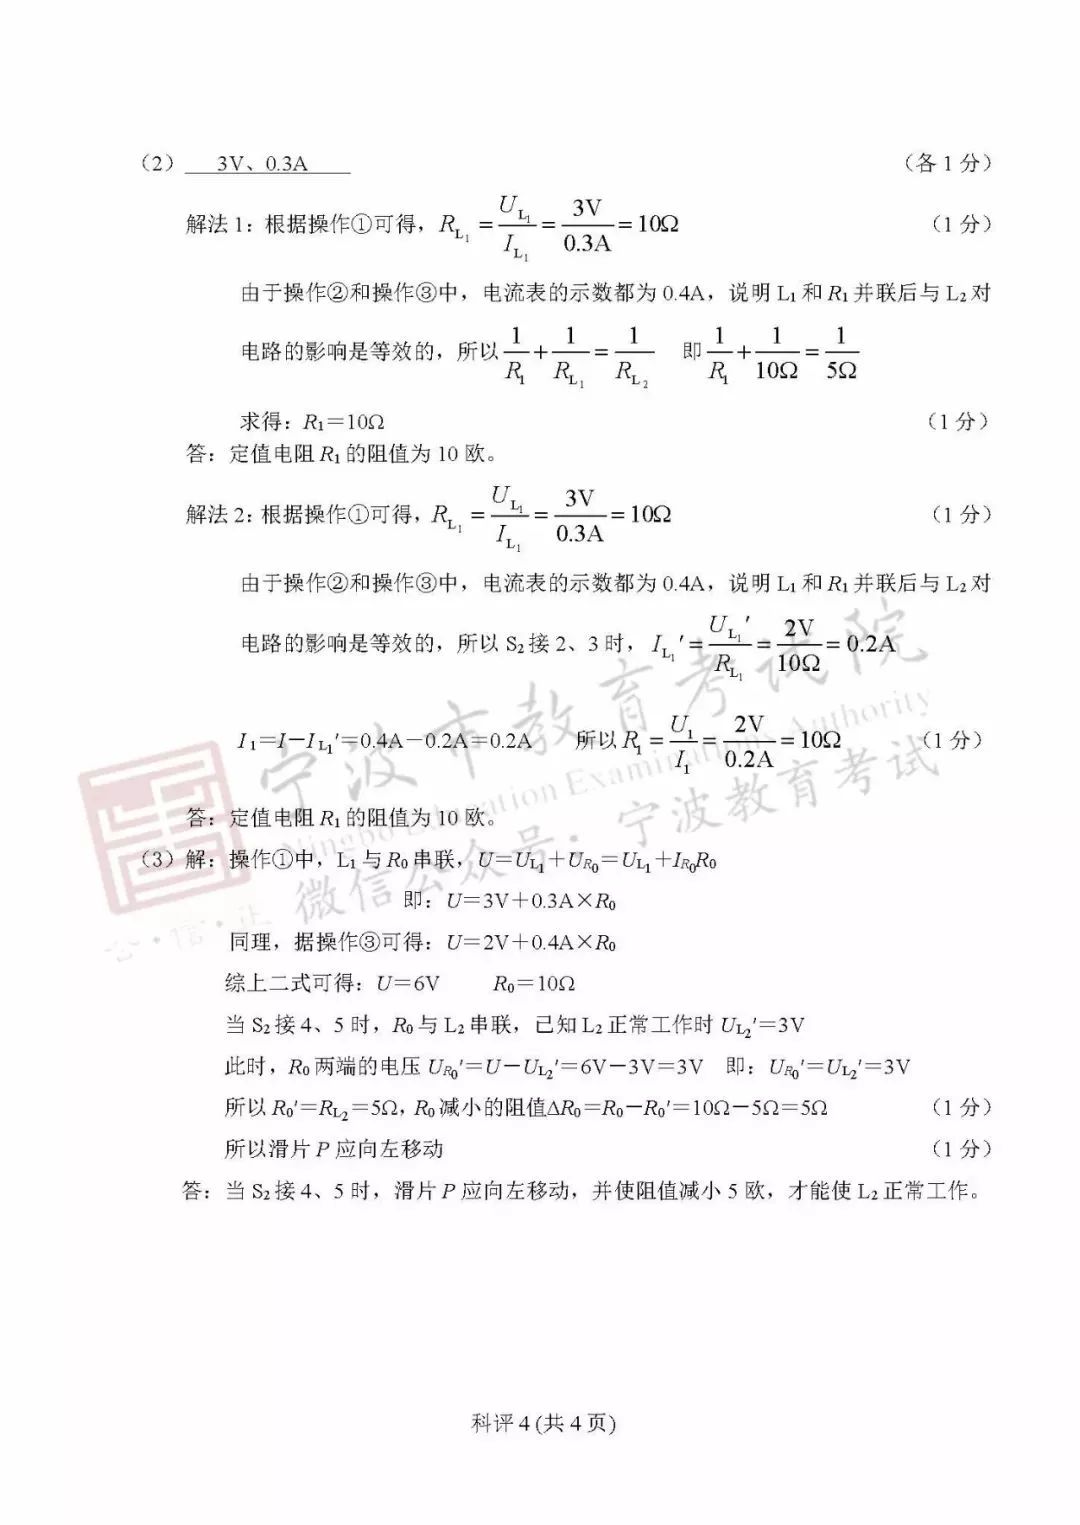 2019年浙江宁波中考《物理》真题及答案已公布